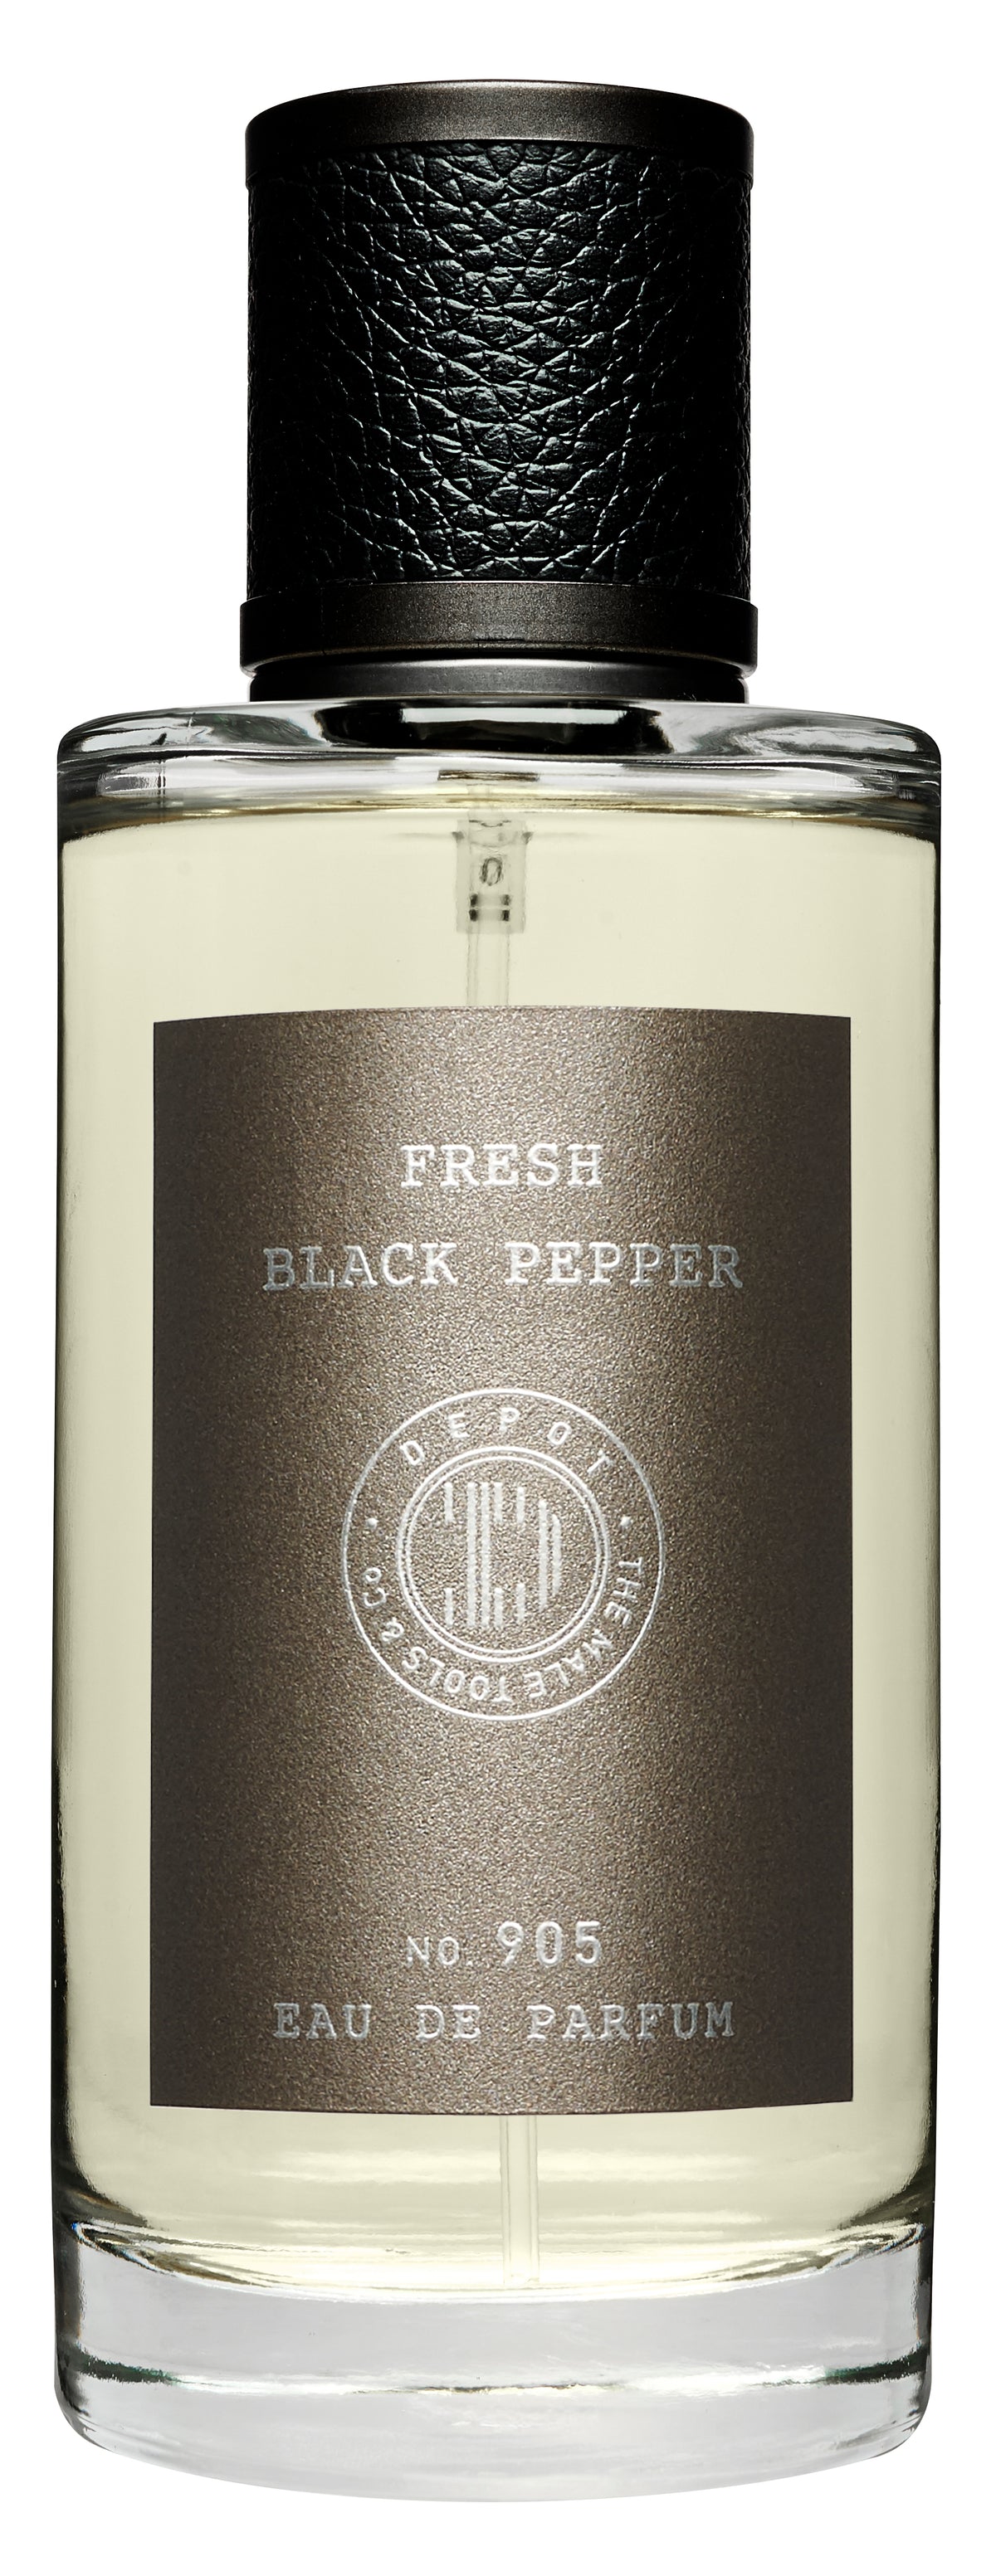 Depot - Eau de Parfum - Fresh black pepper - Ilmur